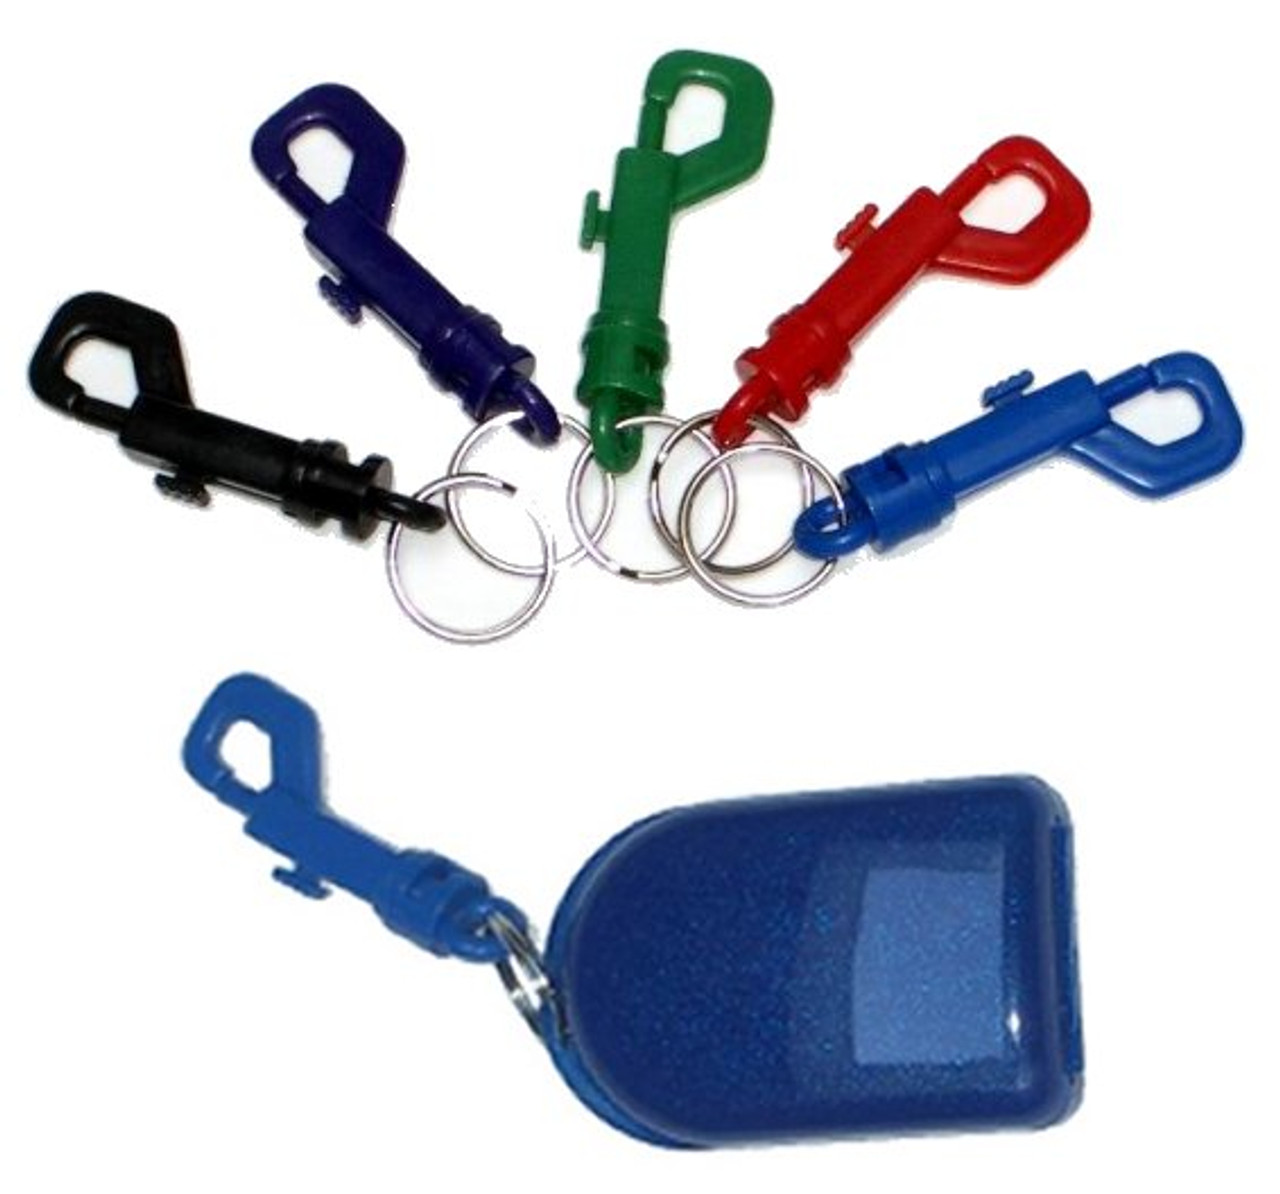 keychain retainer case clips 16 48829.1626214749